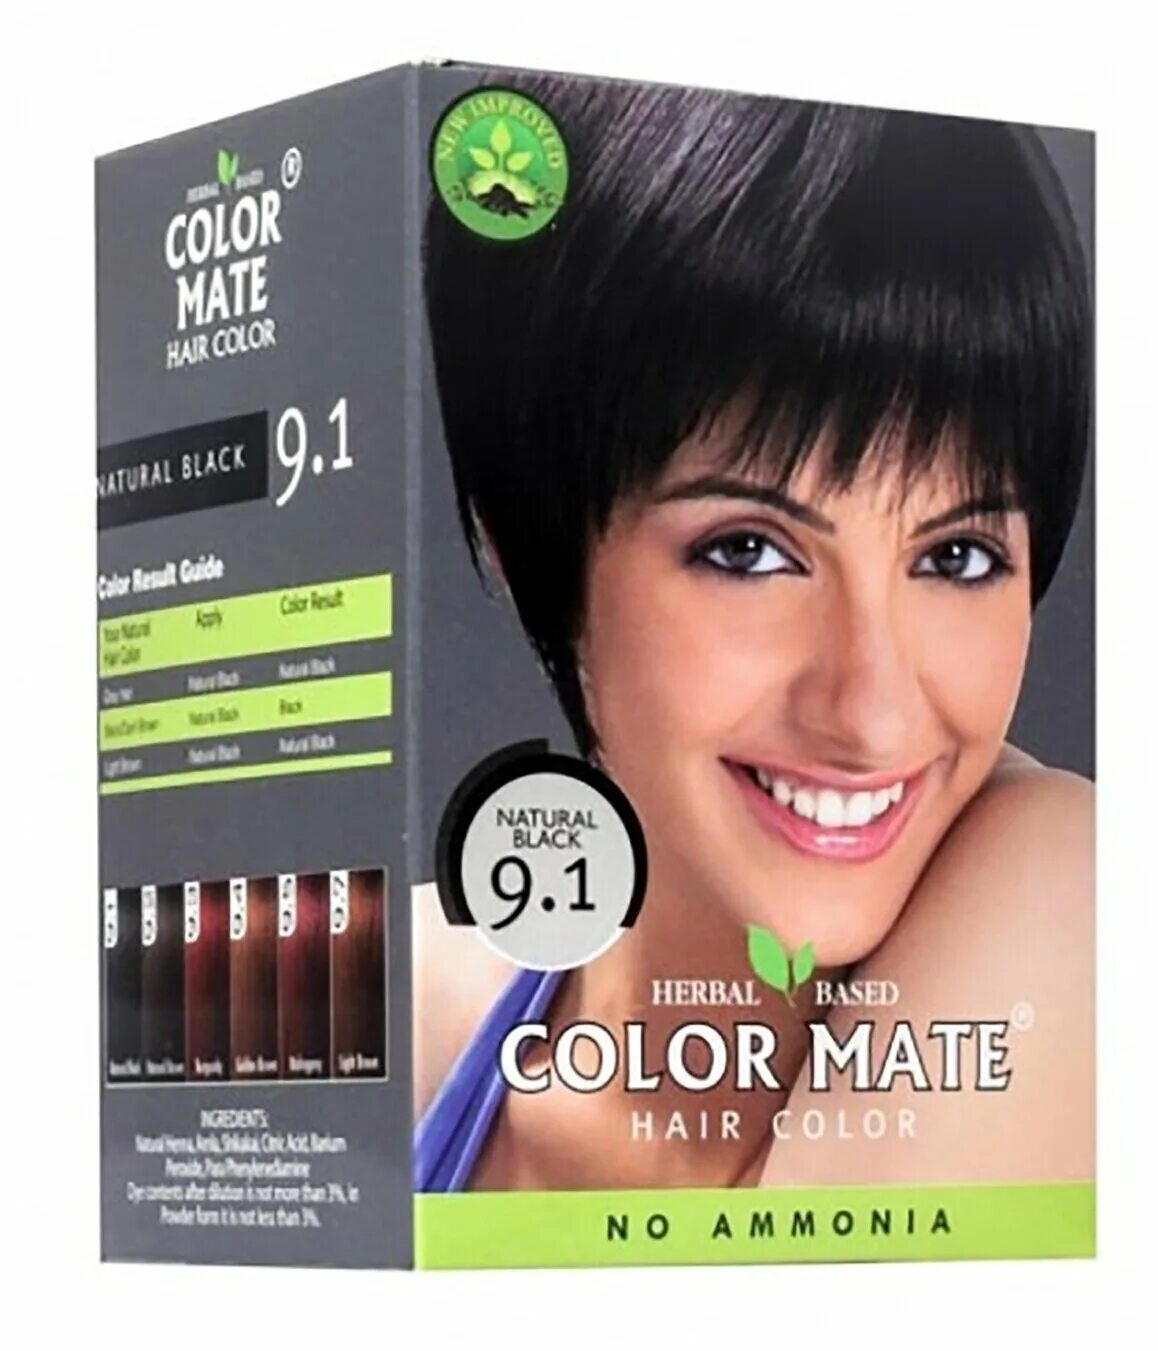 Краска натуральный черный. Color Mate краска для волос. Колор мате 9.5 краска для волос. Травяная краска для волос Color Mate hair Color 75 гр (5*15) натуральный черный. Краска для волос Color Mate 9.2 натуральный.